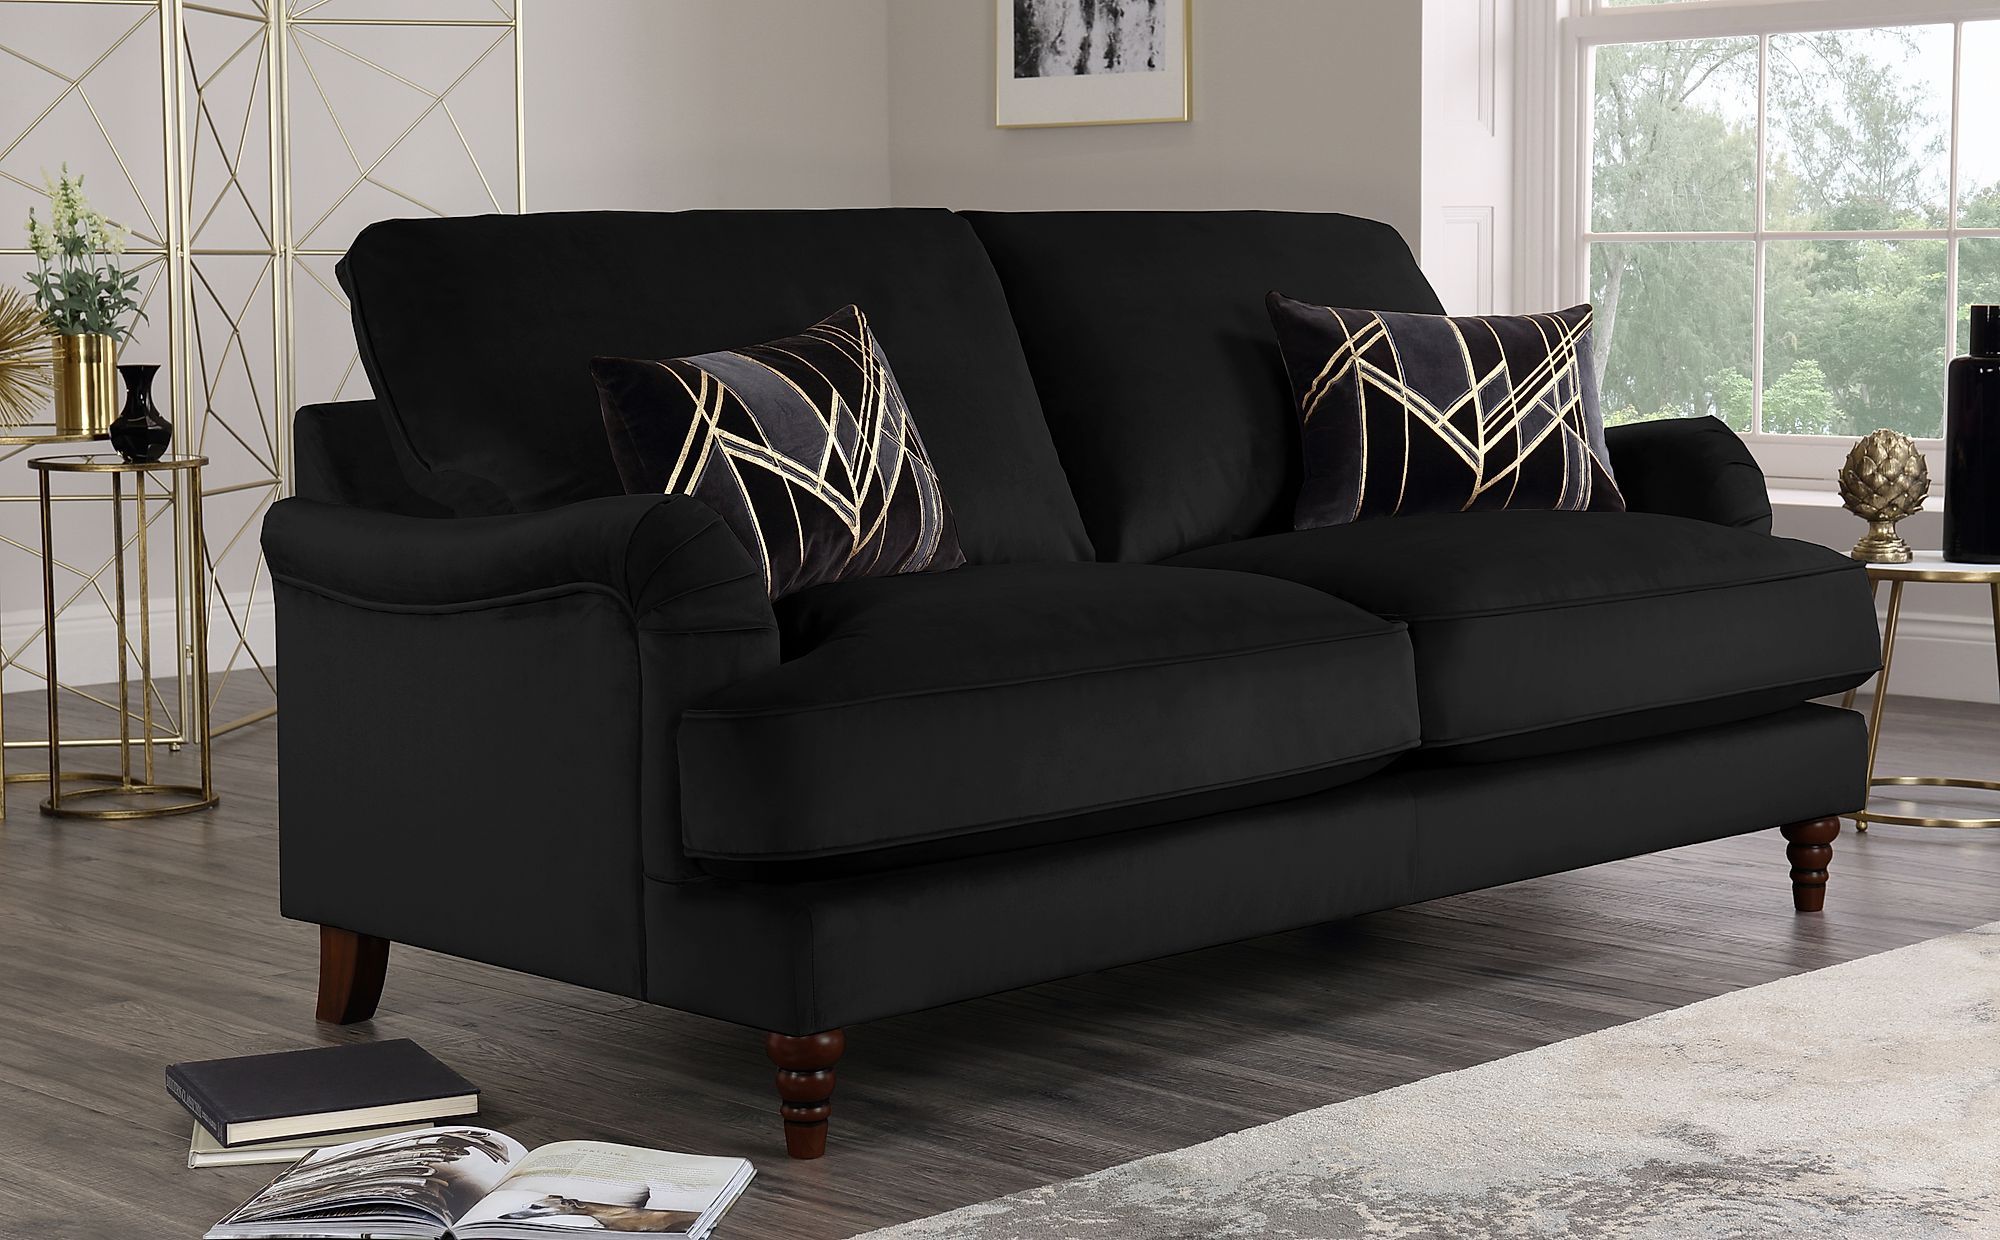 Charleston Black Velvet 3 Seater Sofa | Furniture Choice For Sofas In Black (Gallery 10 of 20)